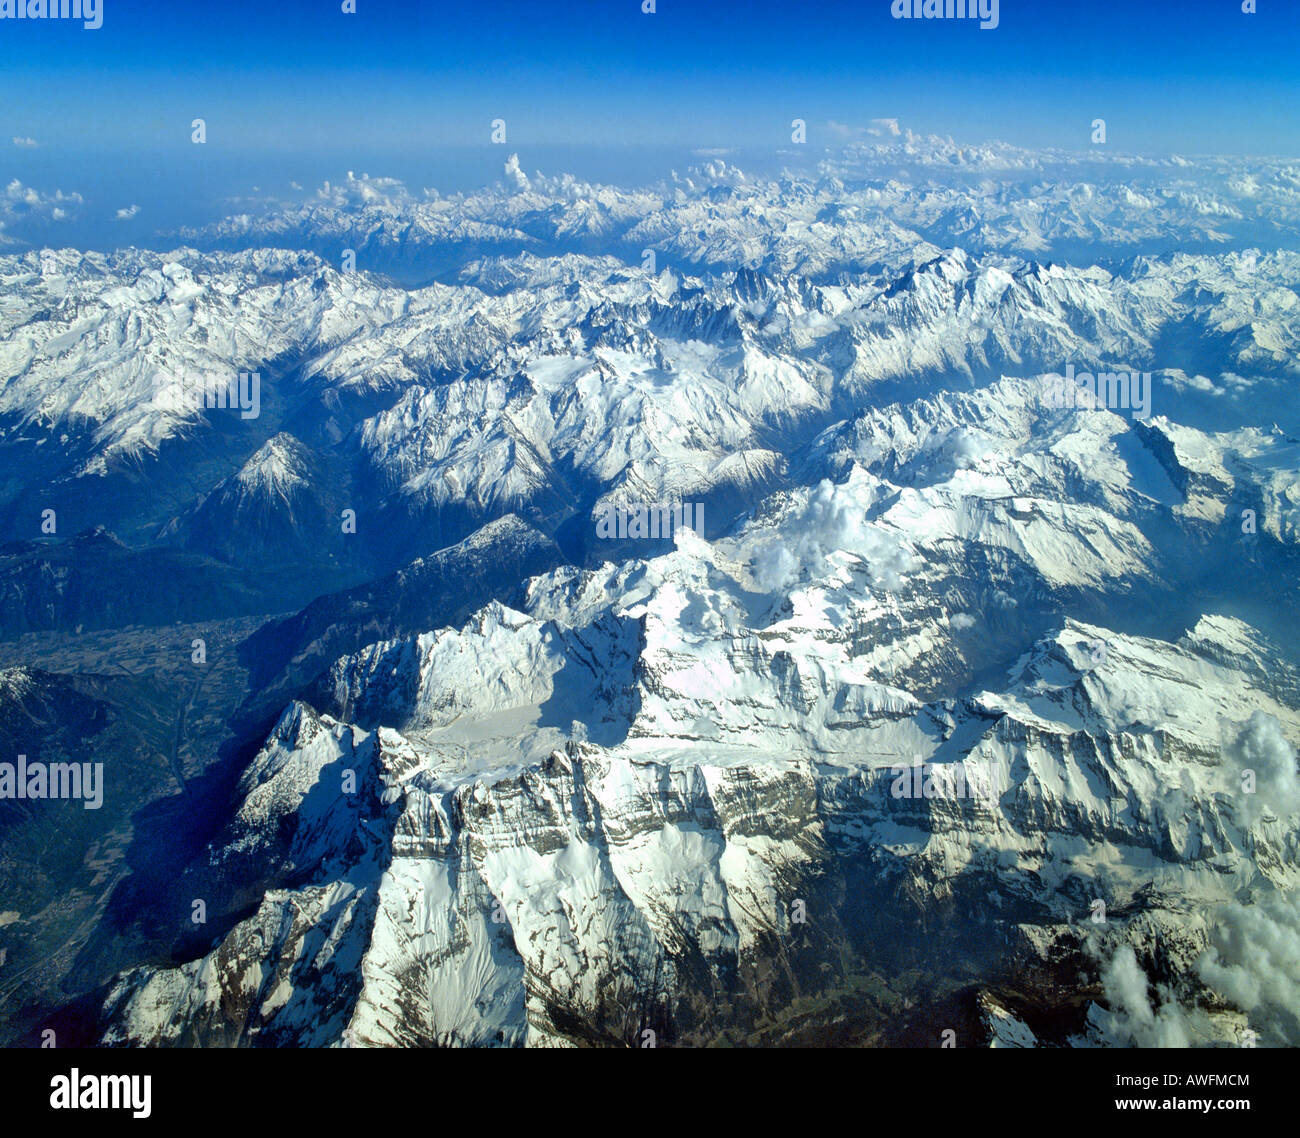 Vue aérienne, Alpes valaisannes, Mont Blanc, Groupe Savoie Alpes, vallée du Rhône, région frontalière entre la France et la Suisse, Europe Banque D'Images